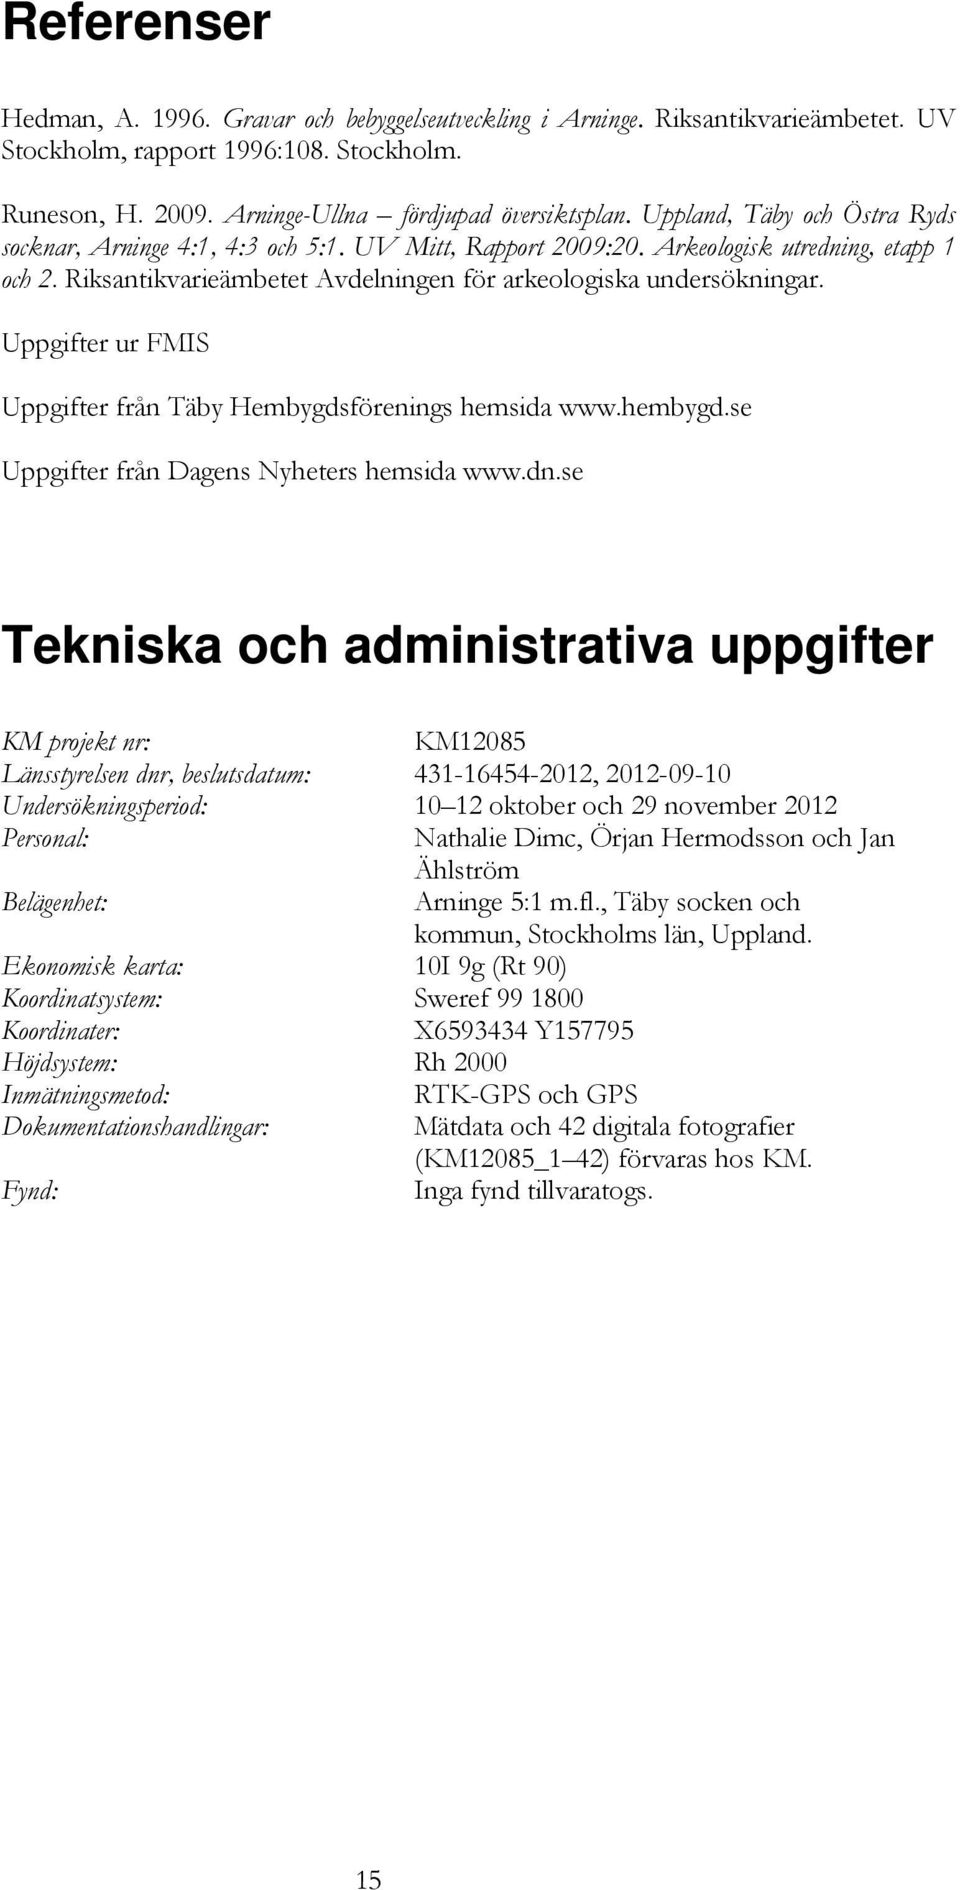 Uppgifter ur FMIS Uppgifter från Täby Hembygdsförenings hemsida www.hembygd.se Uppgifter från Dagens Nyheters hemsida www.dn.